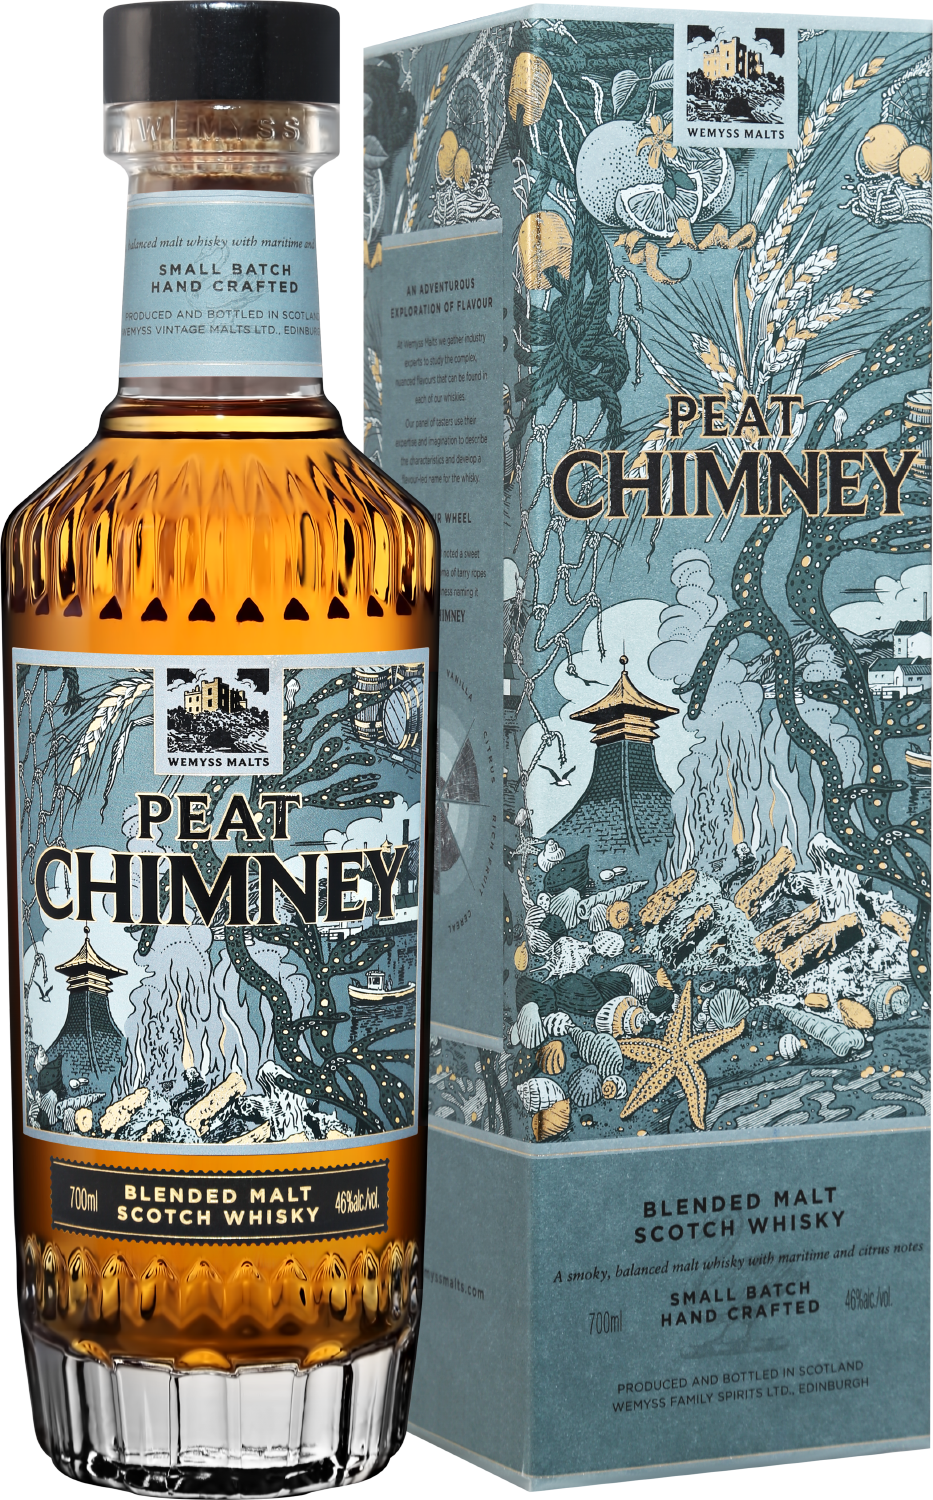 Wemyss Malts Peat Chimney Blended Malt Scotch Whisky (gift box)